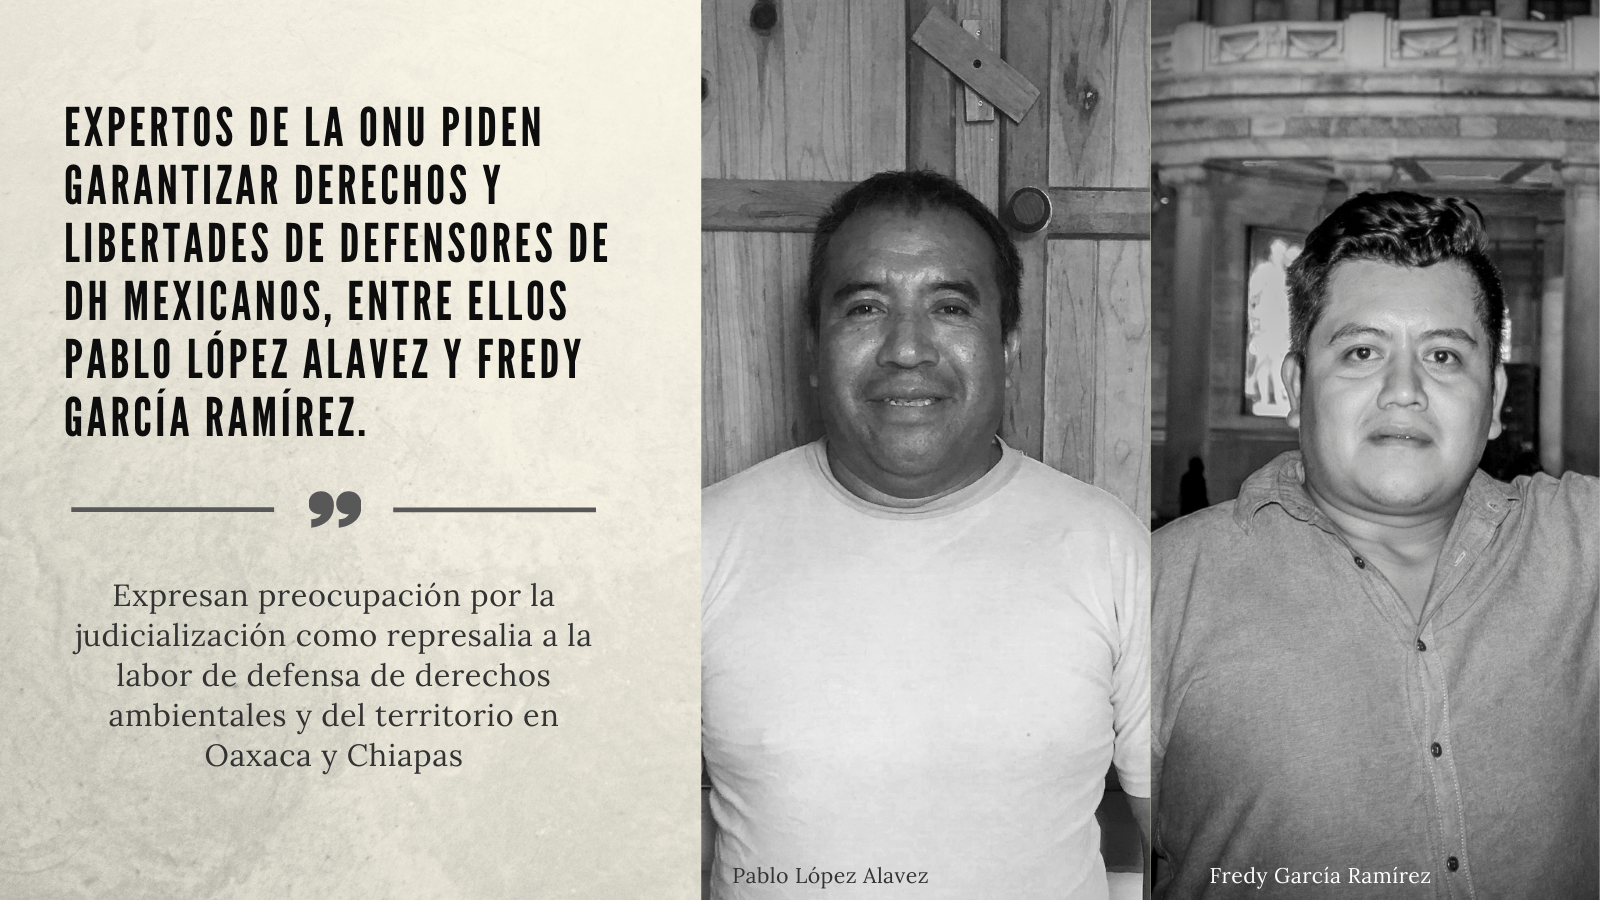 Expertos de la ONU piden garantizar derechos y libertades de defensores de DH mexicanos, entre ellos Pablo López Alavez y Fredy García Ramírez.